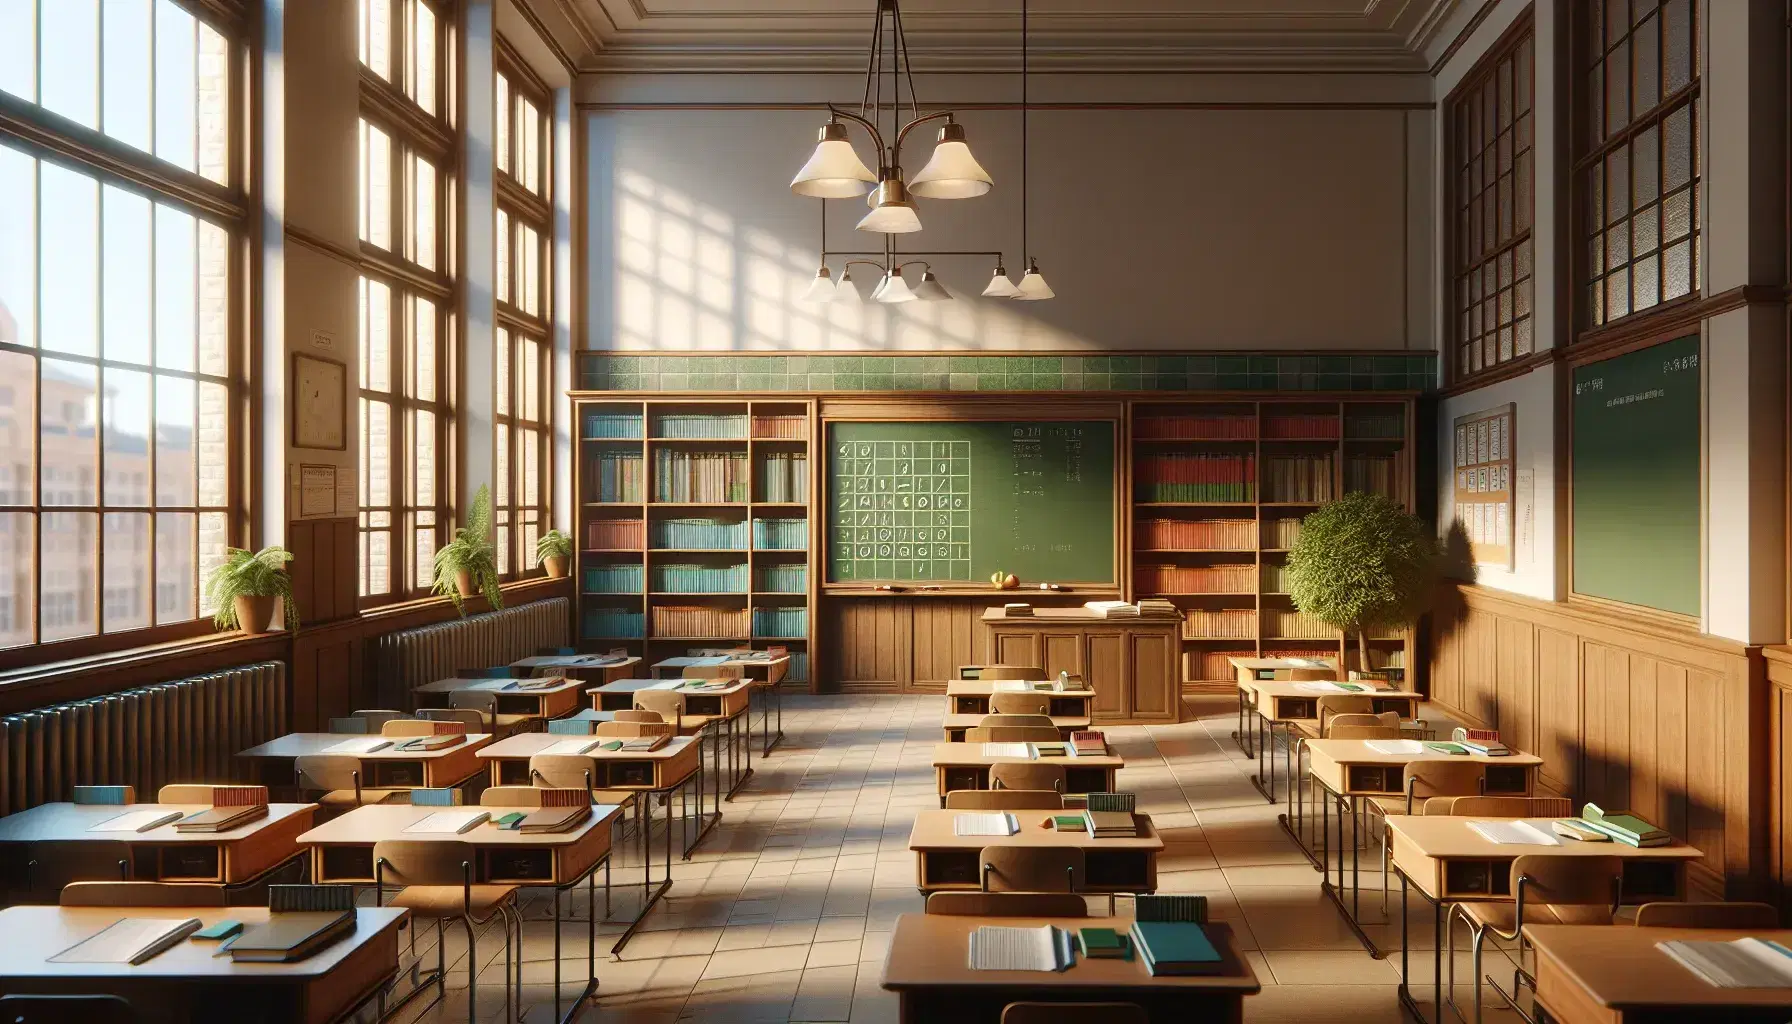 Aula escolar vacía con pupitres de madera, pizarra verde, estantería con libros y planta, iluminada por luz natural.